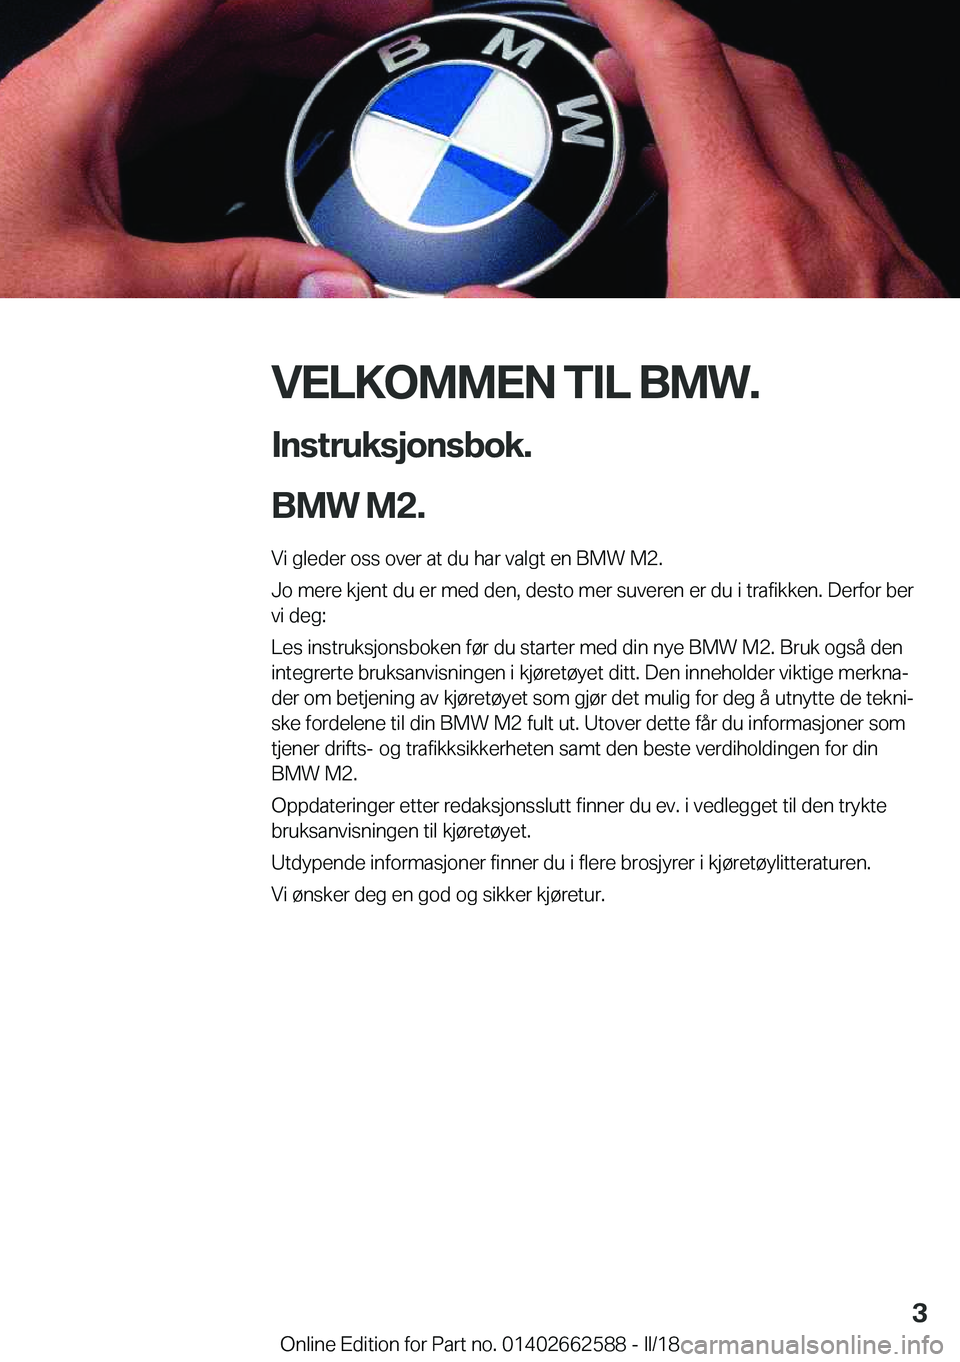 BMW M2 2018  InstruksjonsbØker (in Norwegian) �V�E�L�K�O�M�M�E�N��T�I�L��B�M�W�.�I�n�s�t�r�u�k�s�j�o�n�s�b�o�k�.
�B�M�W��M�2�.�
�V�i� �g�l�e�d�e�r� �o�s�s� �o�v�e�r� �a�t� �d�u� �h�a�r� �v�a�l�g�t� �e�n� �B�M�W� �M�2�.
�J�o� �m�e�r�e� �k�j�e�